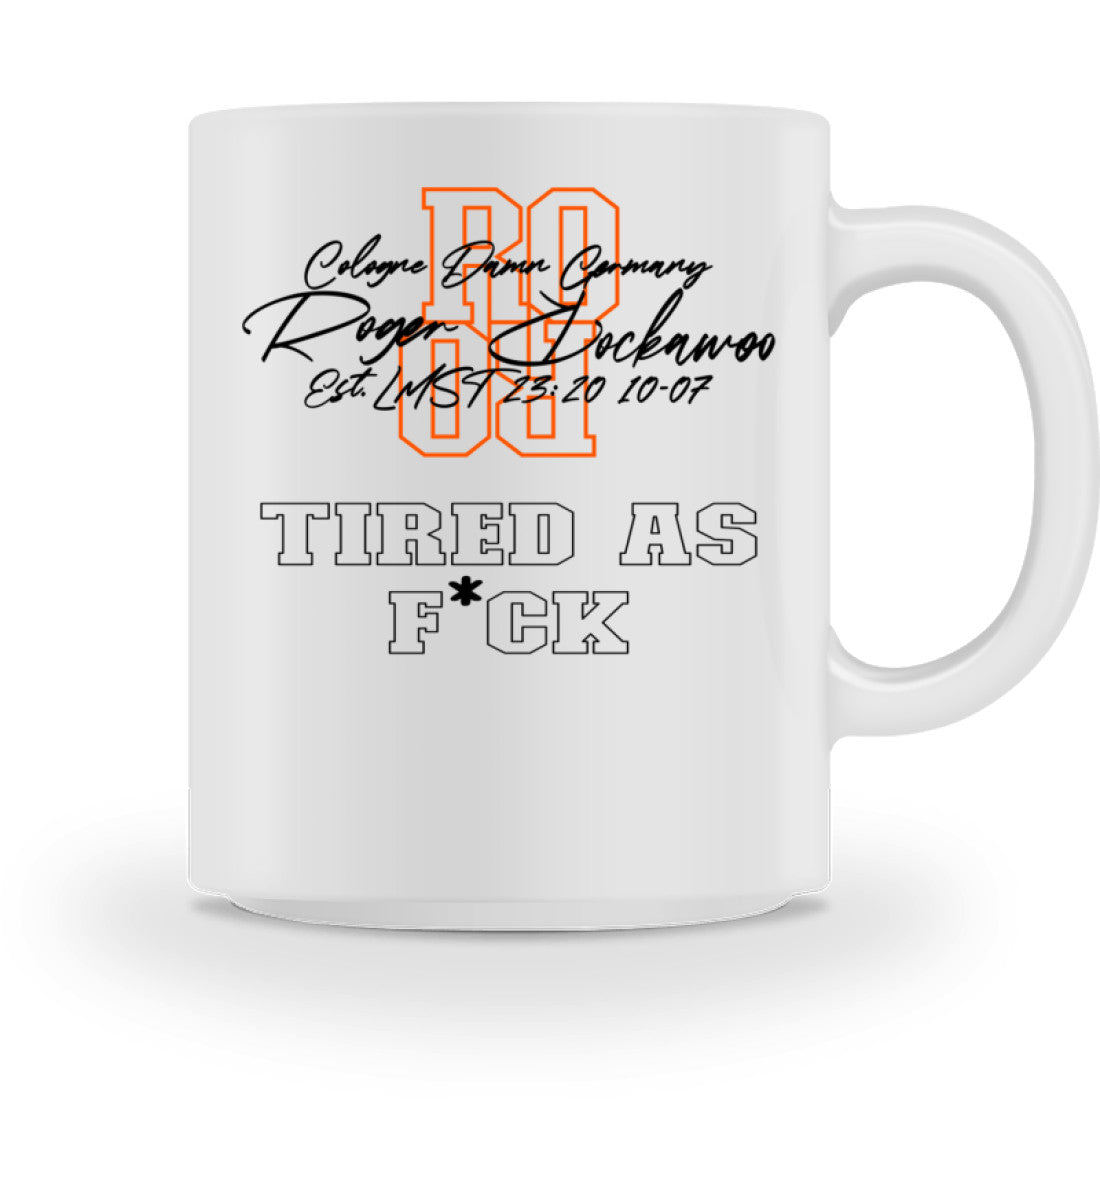 Weiße Tasse für Kaffee oder Tee schwarz und orange bedruckt mit Logo Schriftzug von Roger Rockawoo Clothing